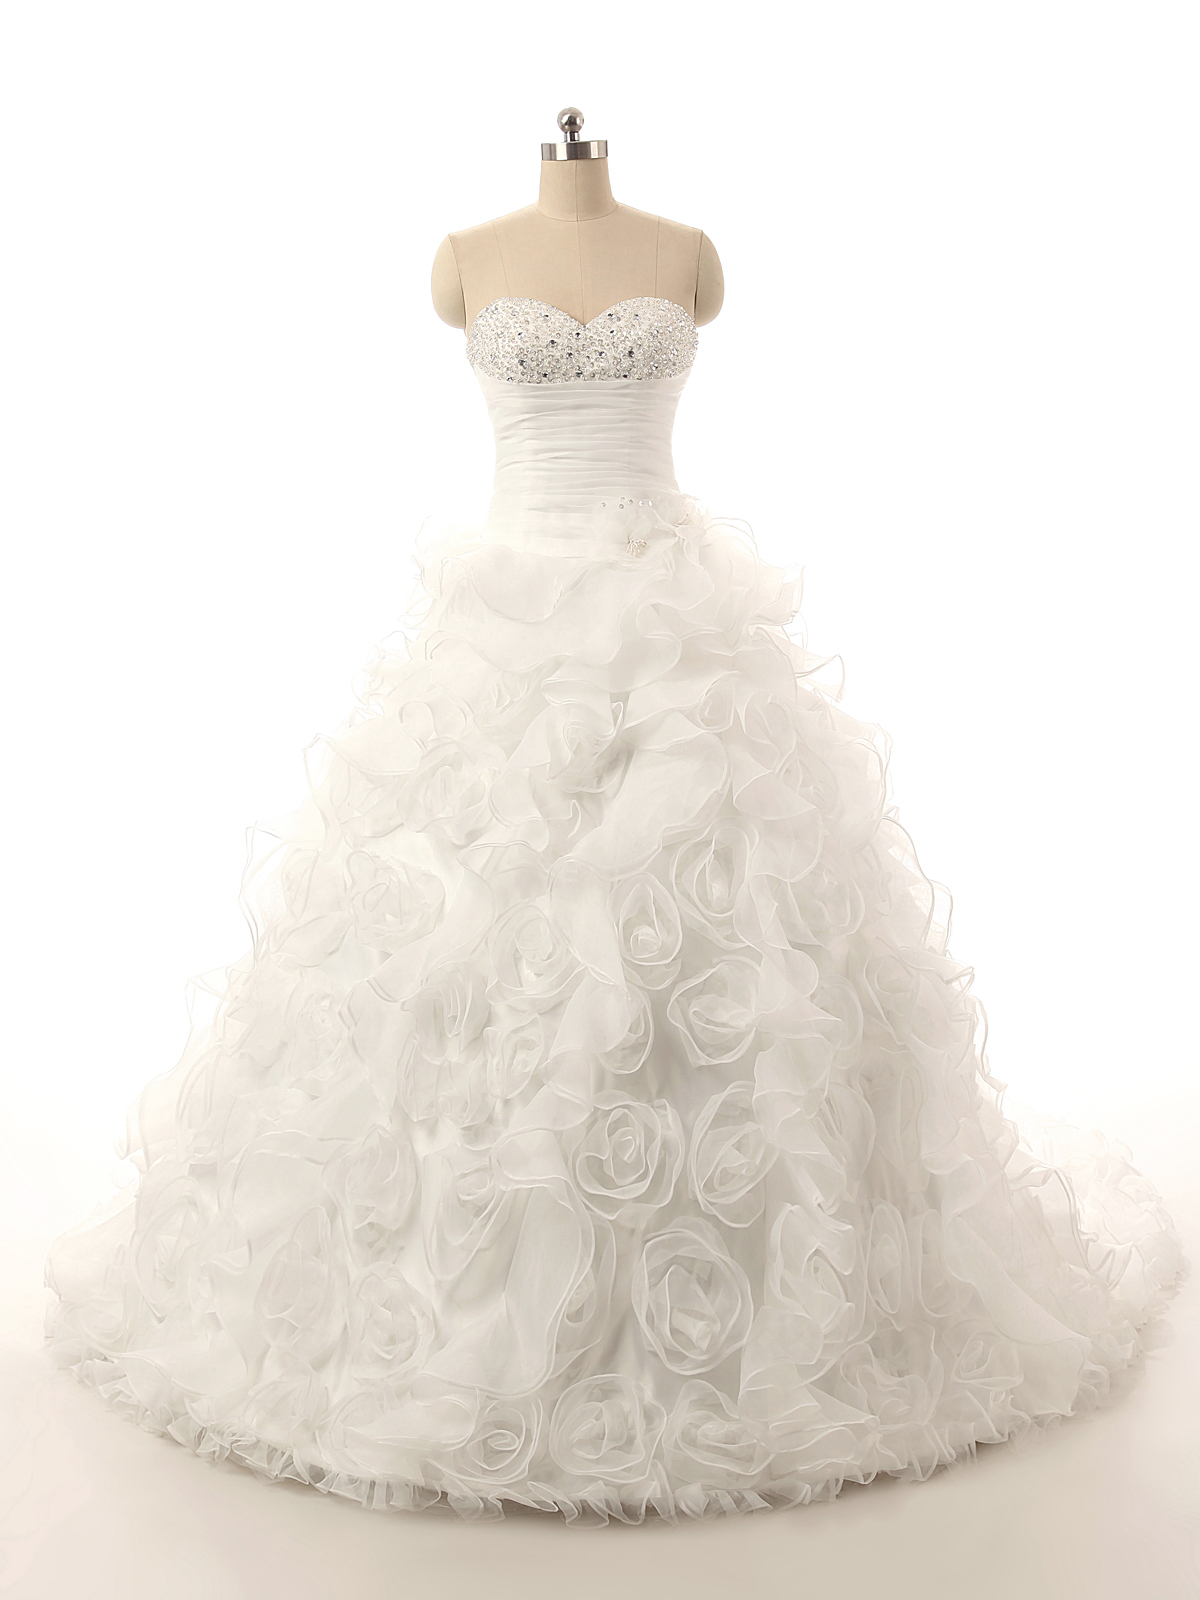 Ball Gown Handmade Flower Long Tulle Wedding Dress,luxury Ball Gown Sweetheart Wedding Dress,ball Gown Long Tulle Bridal Dress